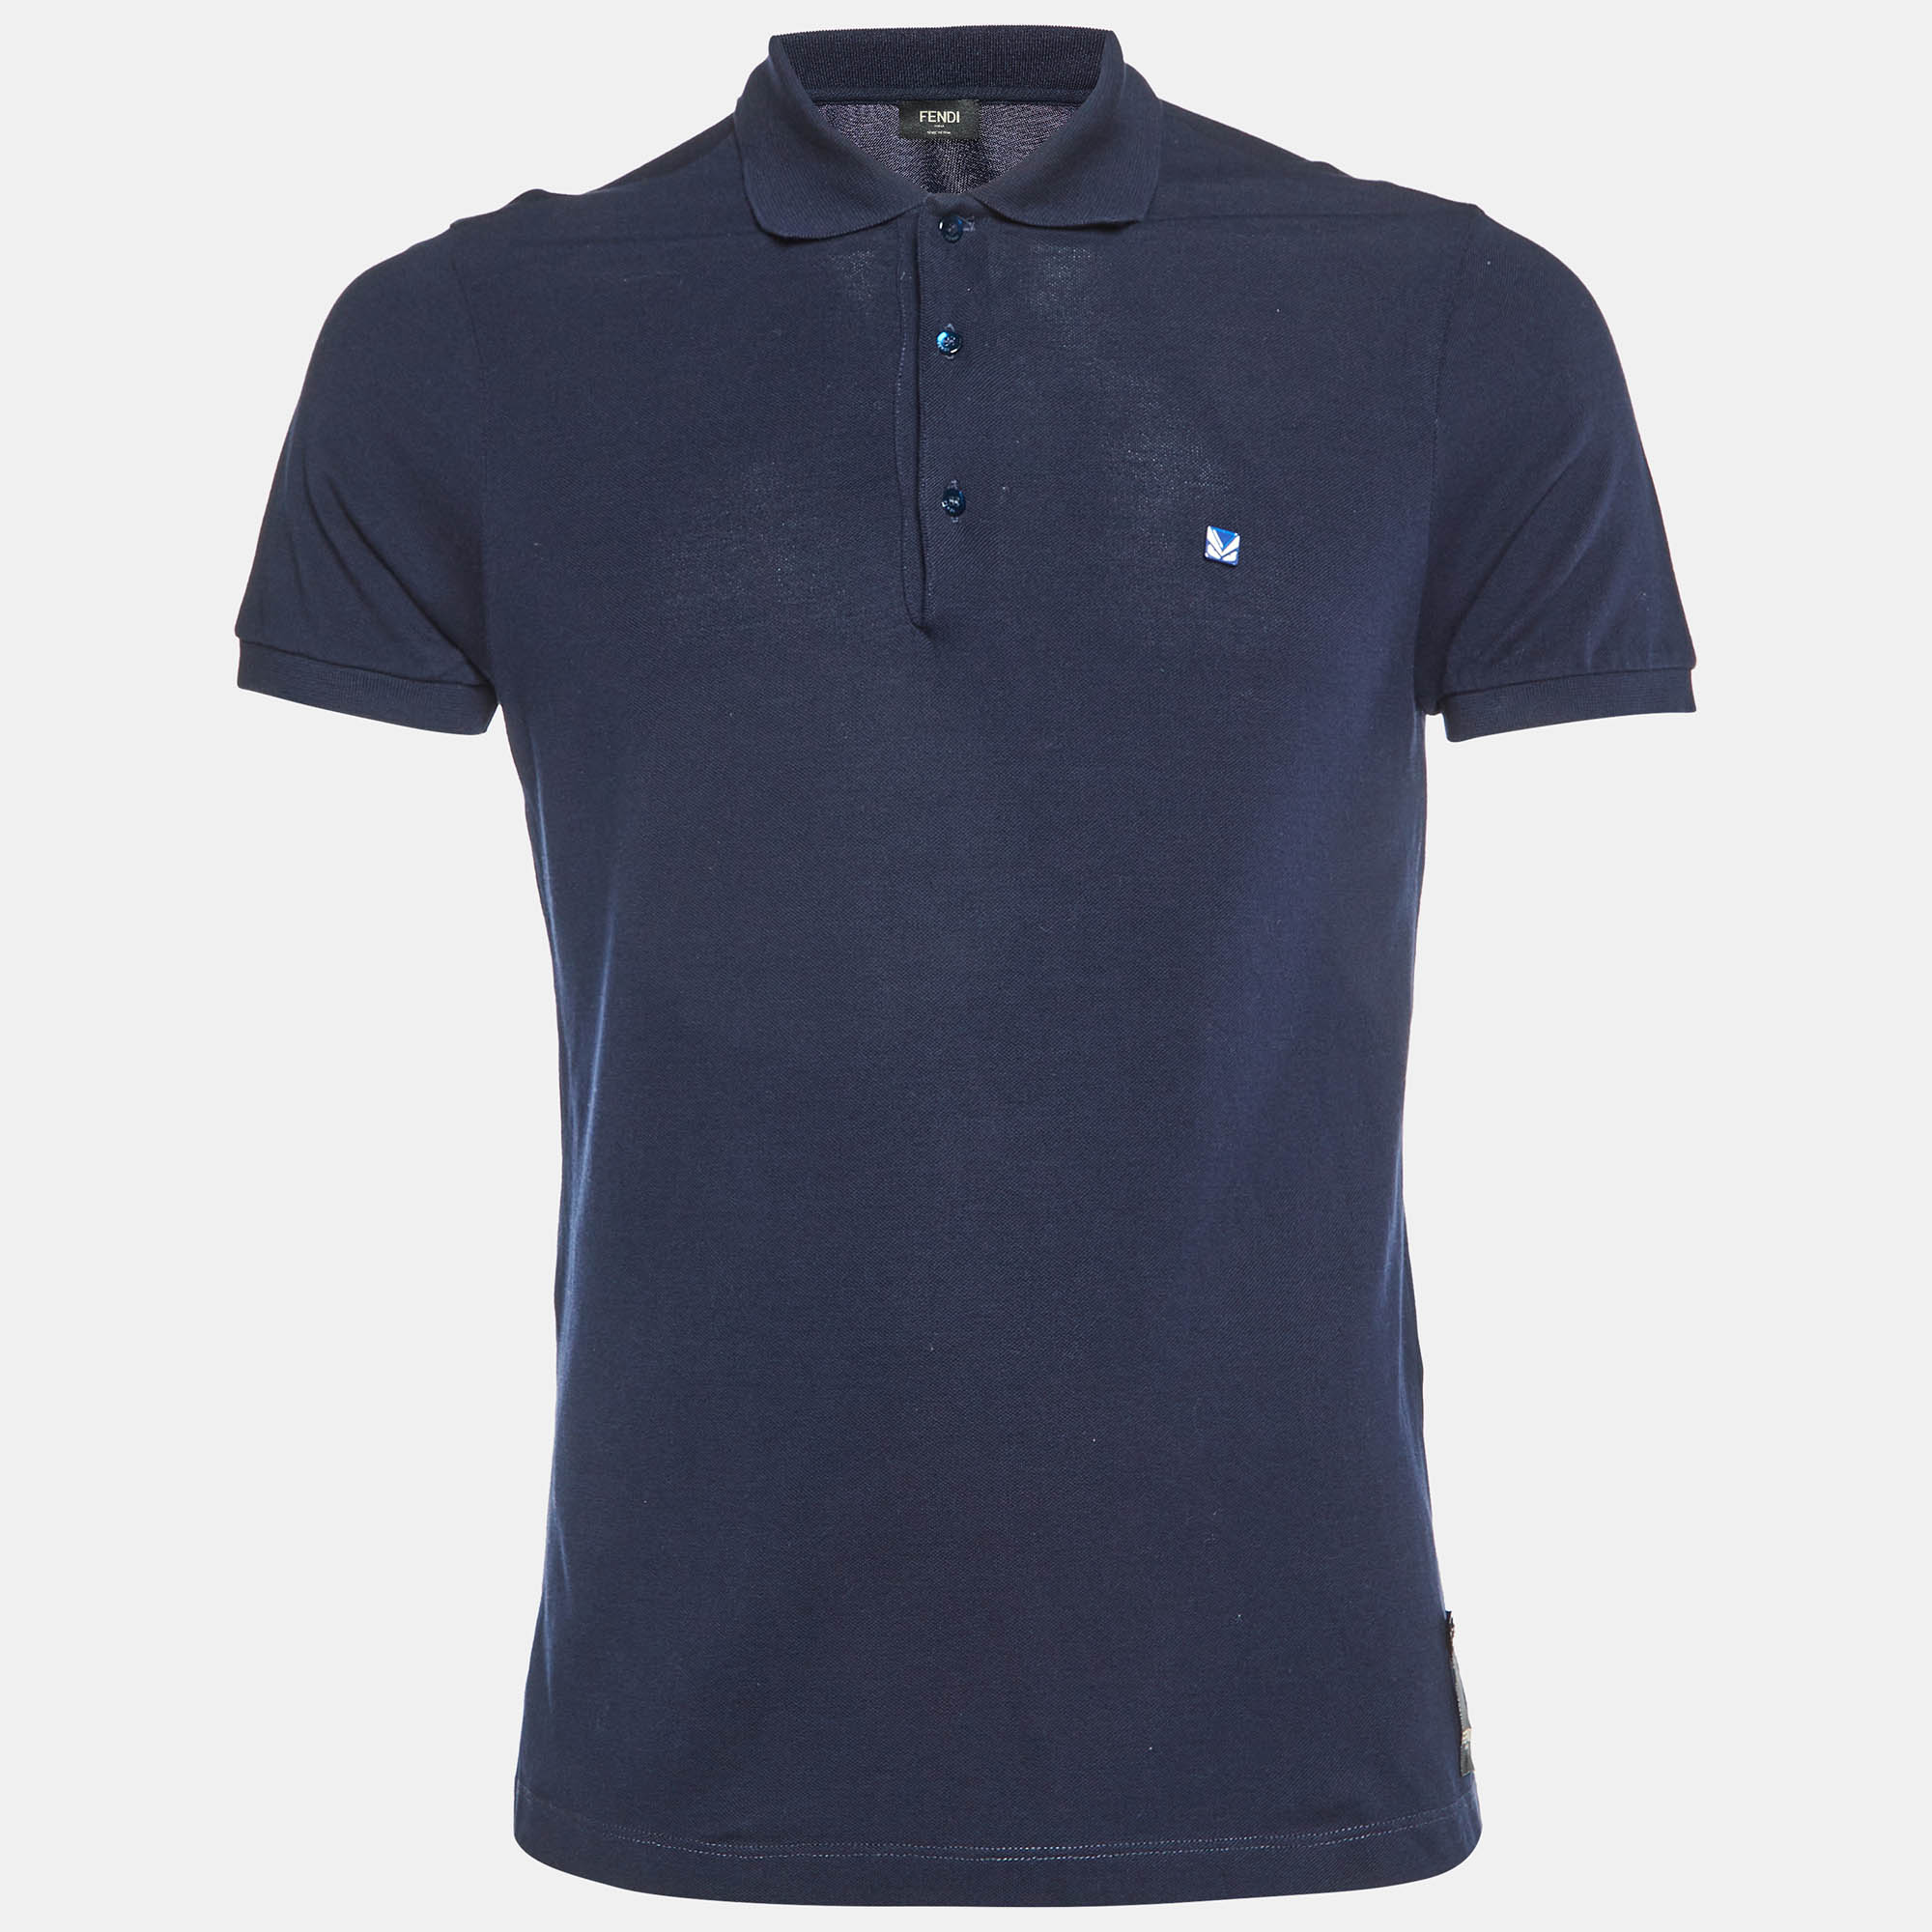 

Fendi Navy Blue Cotton Pique Knit Polo T-Shirt S